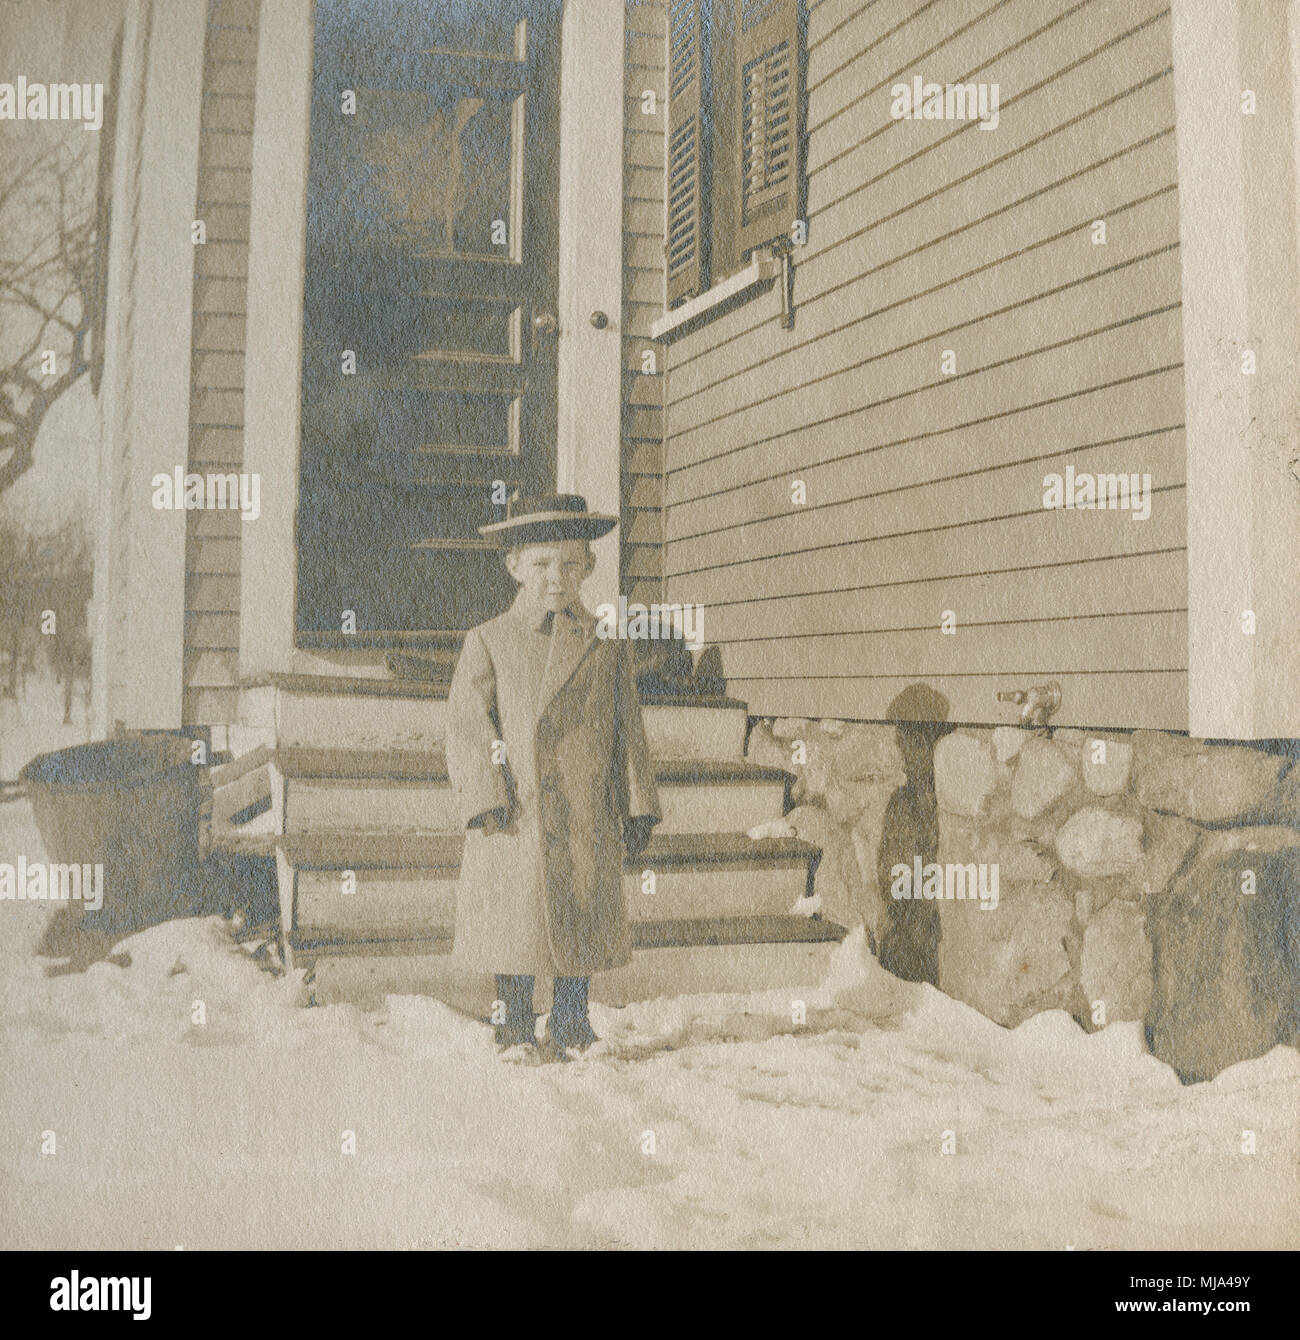 Antique c1905 la fotografia del giovane ragazzo in capi di abbigliamento in stile Vittoriano al di fuori in inverno. Posizione sconosciuta, probabilmente la Nuova Inghilterra, Stati Uniti d'America. Fonte: originale stampa fotografica. Foto Stock